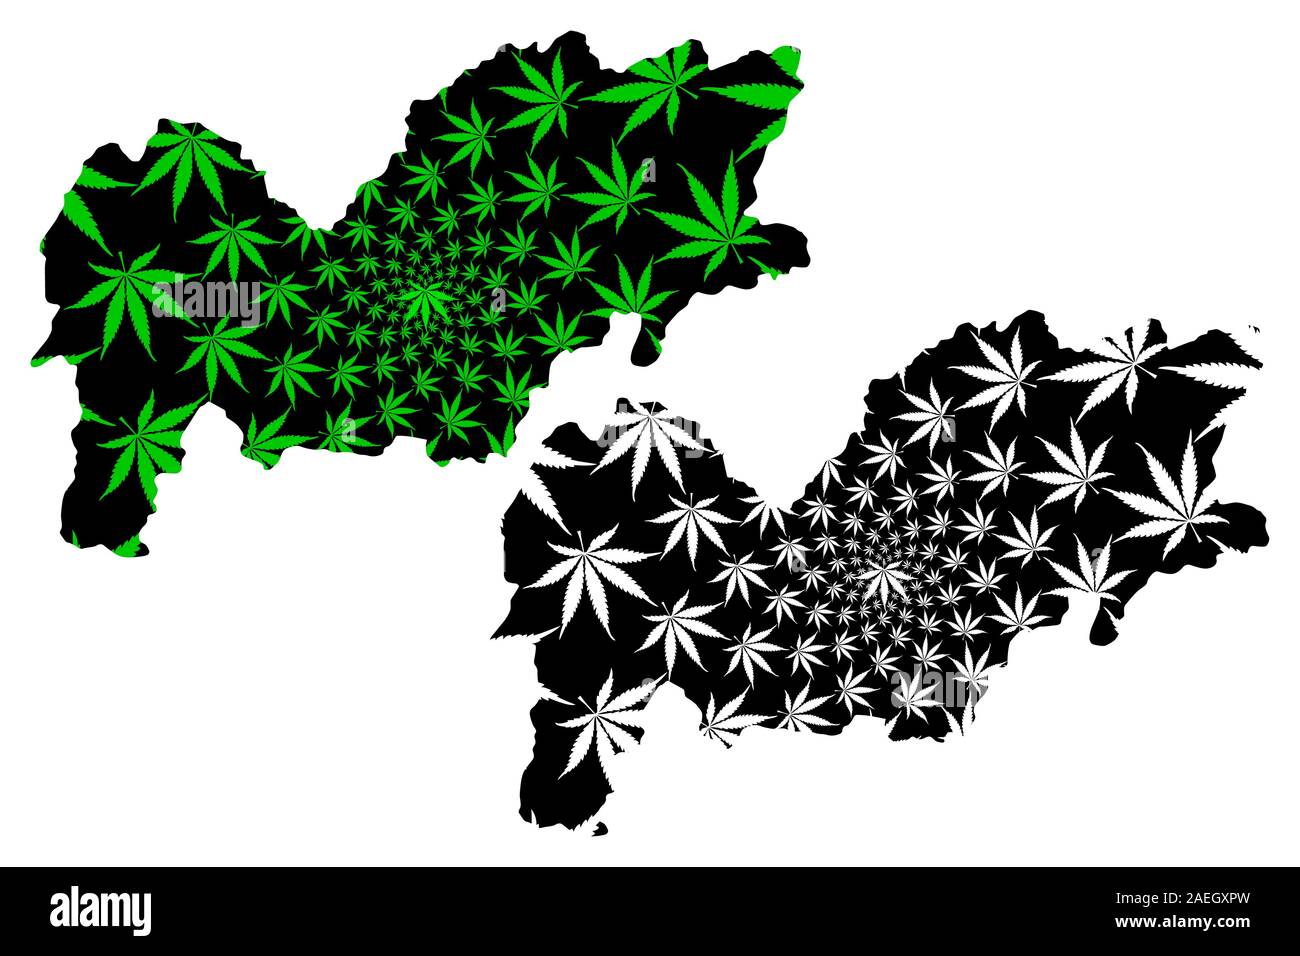 Urozgan Provinz (Islamische Republik Afghanistan, Provinzen Afghanistans) Karte ausgelegt ist Cannabis blatt grün und schwarz, Uruzgan oder Oruzgan mad Karte Stock Vektor